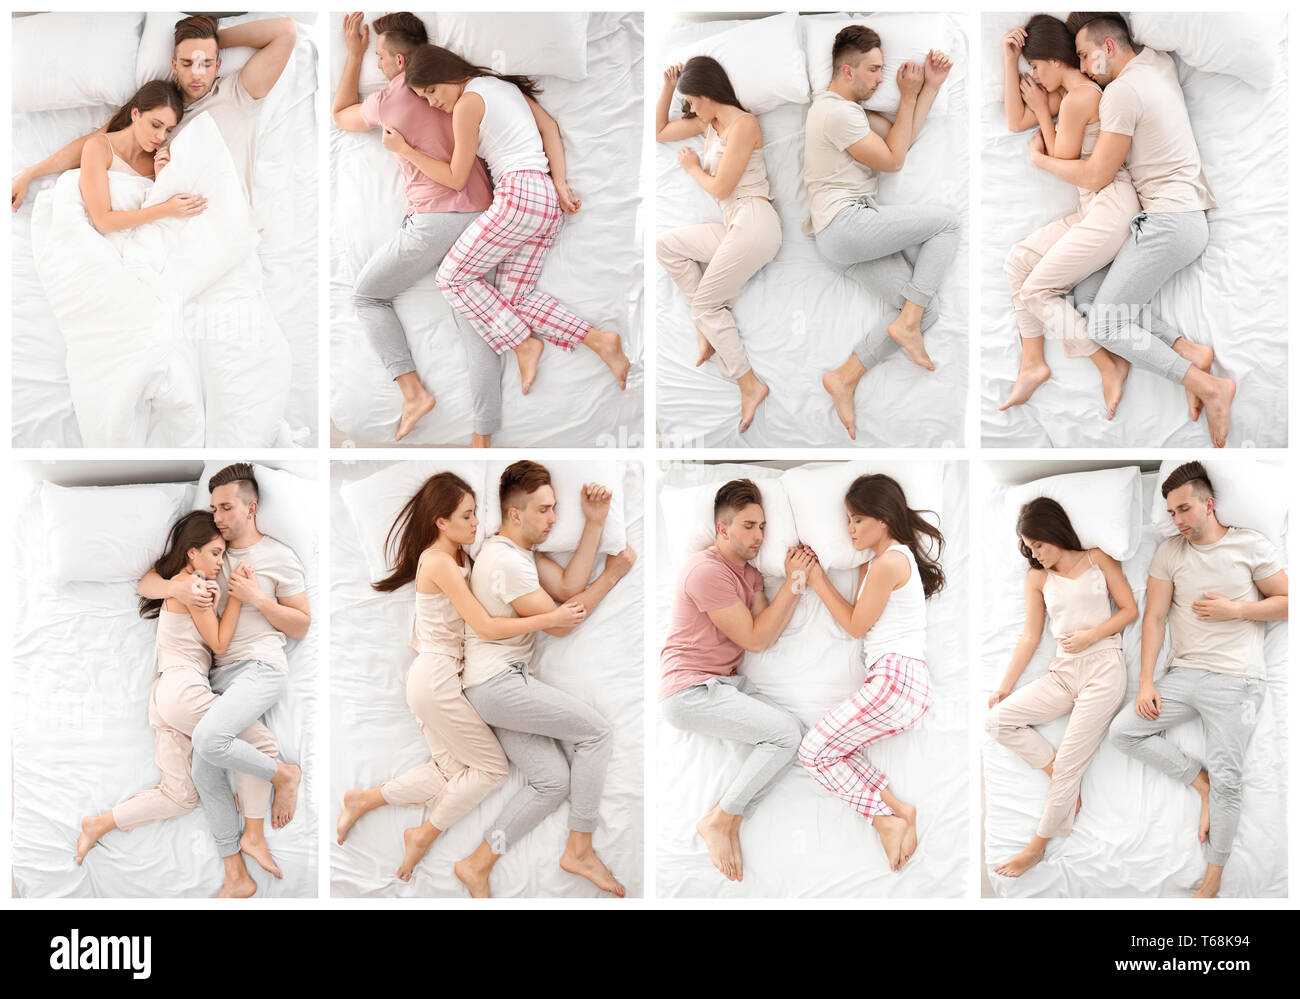 sleeping position can tell a lot about your relationship with your partner  - आपके सोने का अंदाज बताता है कि कैसा है पार्टनर के साथ आपका रिश्ता |  HealthShots Hindi